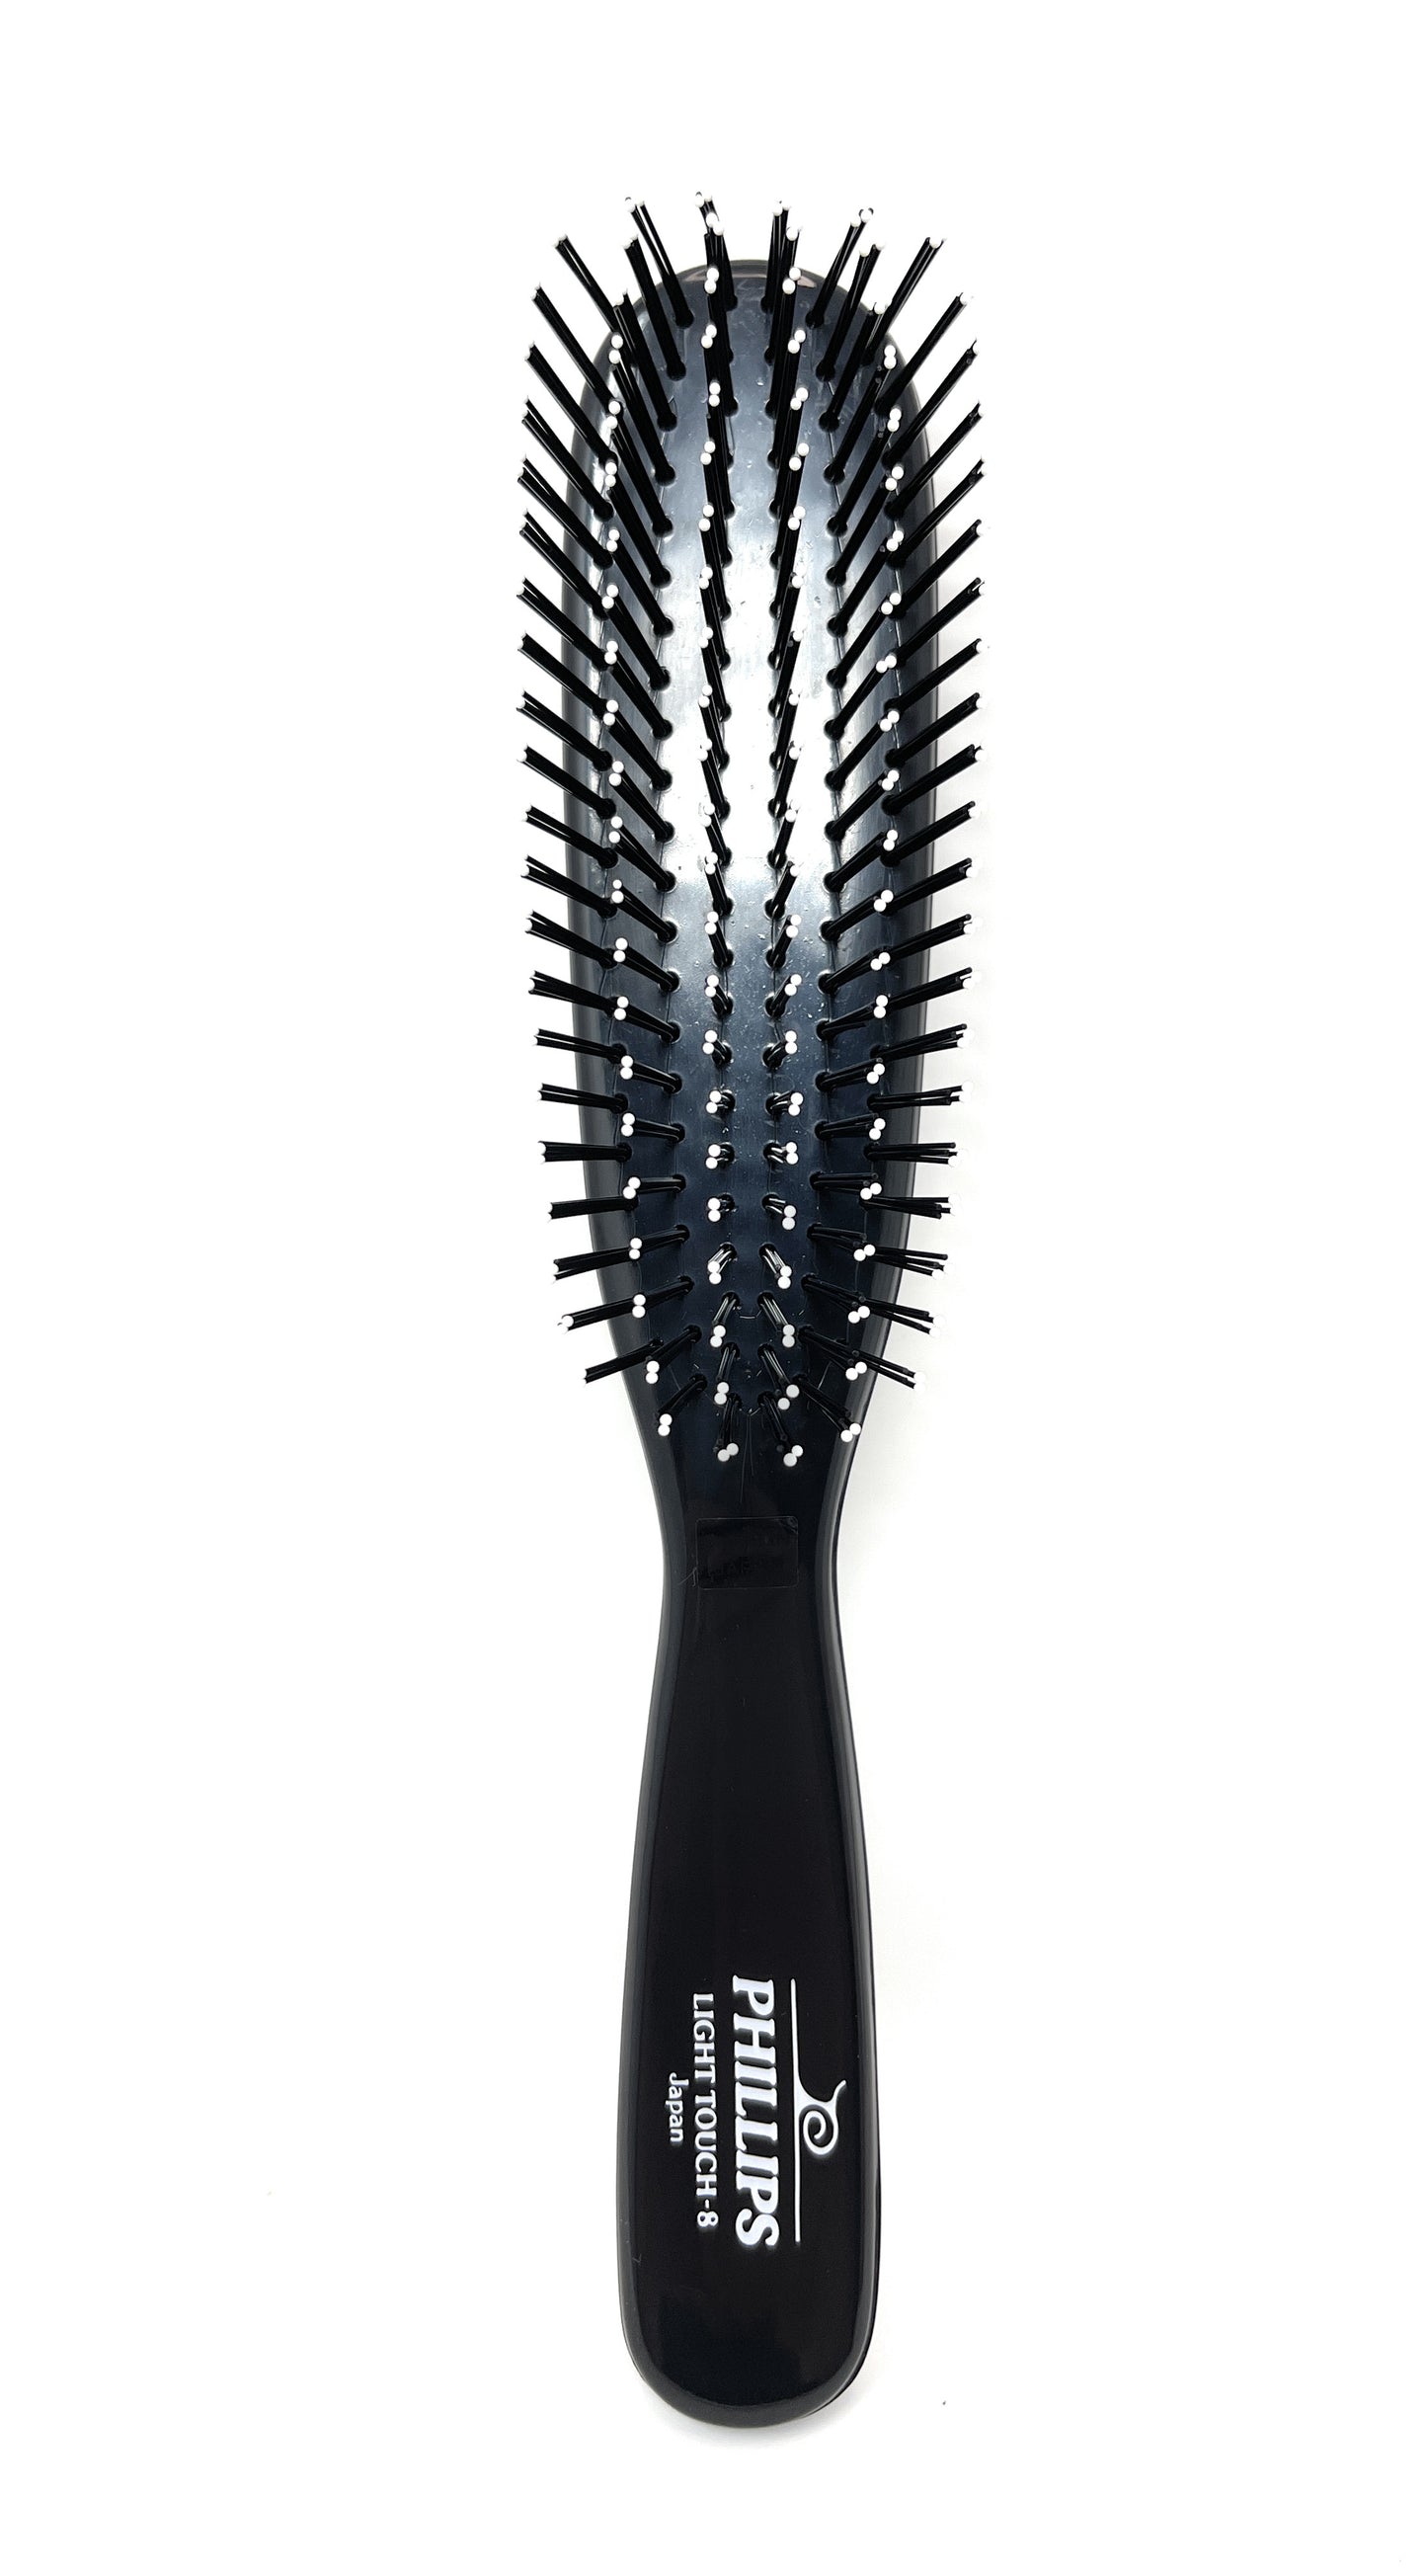 Phillips Brush Light Touch 8 Nylon Styling Hair Brush Black Rectangle handle 1 Pc.